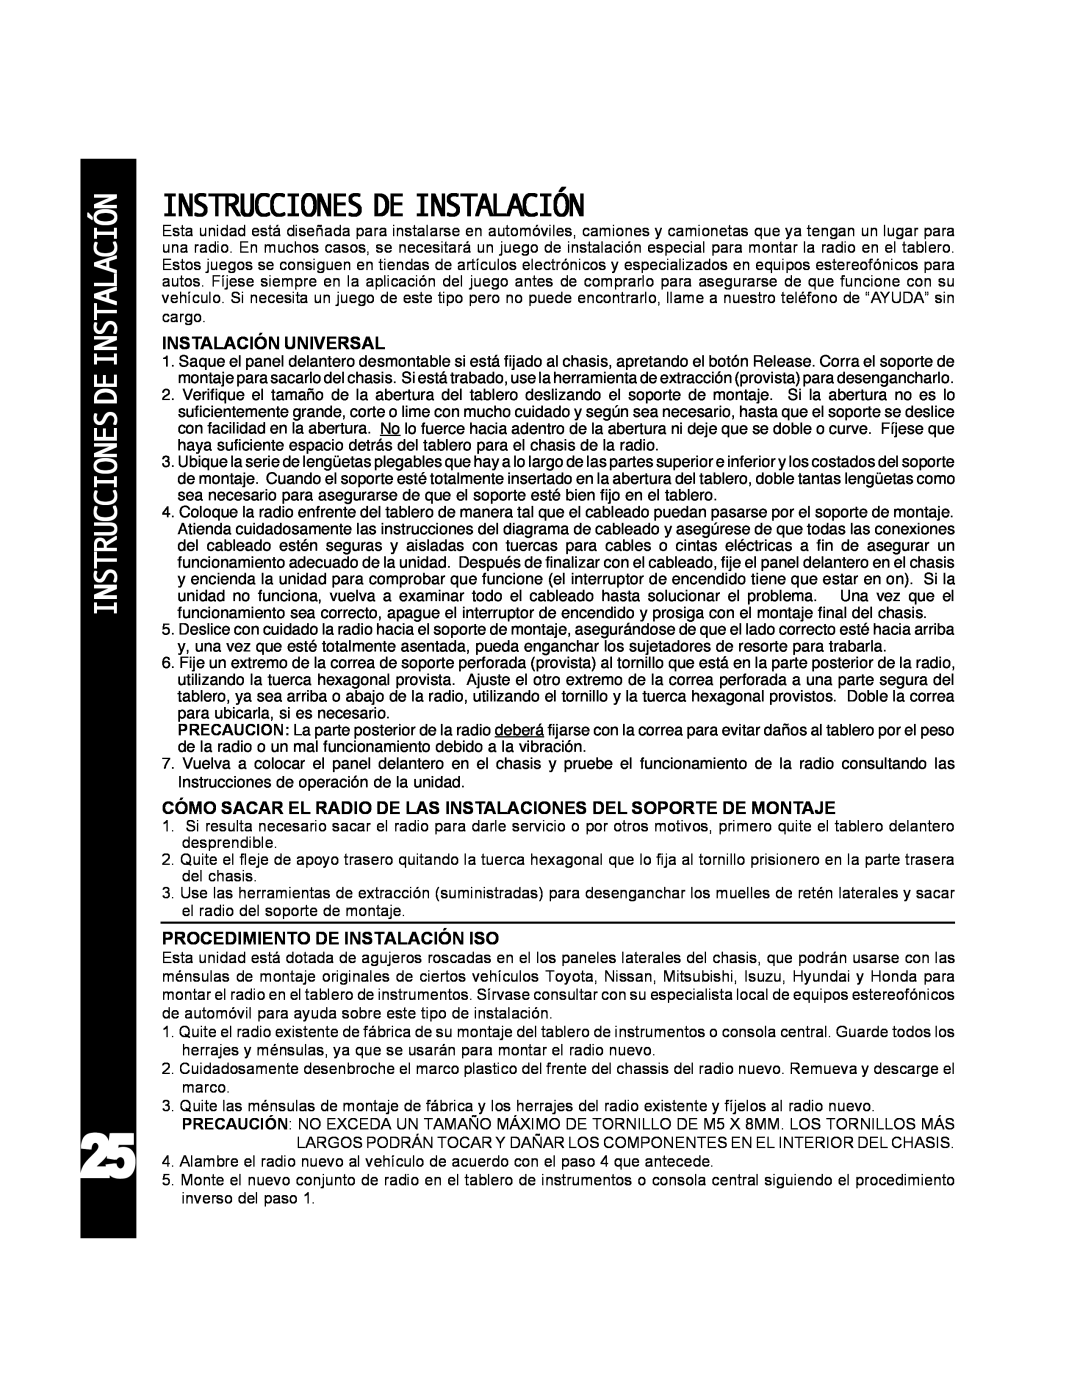 Audiovox ACD-25 manual Instrucciones De Instalación, Instalación Universal, Procedimiento De Instalación Iso 